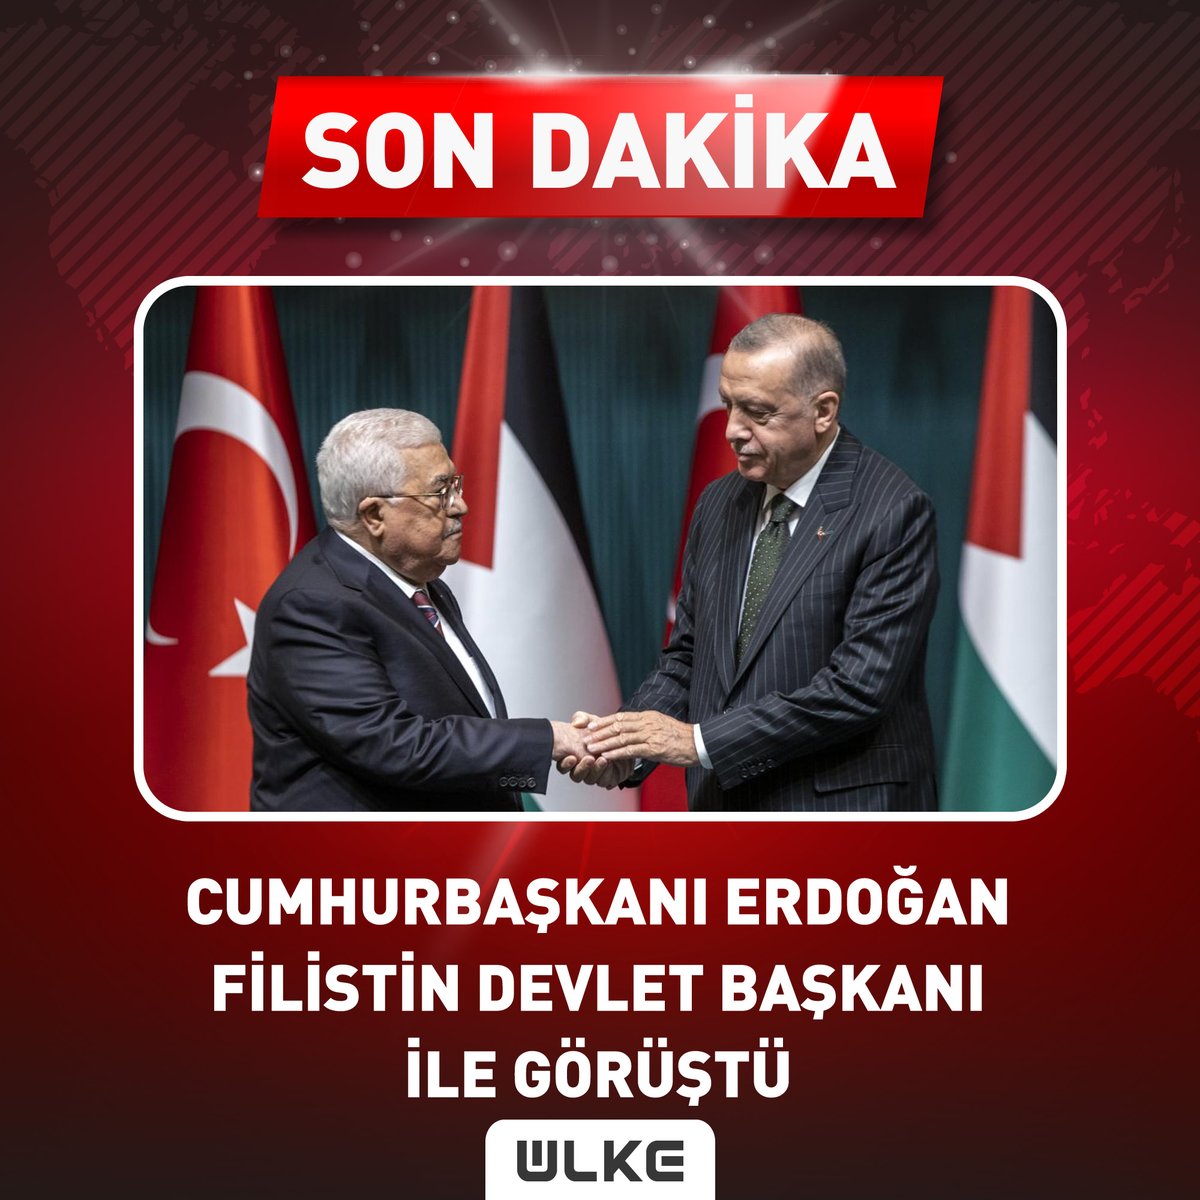 #SONDAKİKA Cumhurbaşkanı Erdoğan, Filistin Devlet Başkanı Abbas ile görüştü. Görüşmede Erdoğan, 'İsrail bu zulmün bedelini ödeyecek.' ifadelerini kullandı. #haber